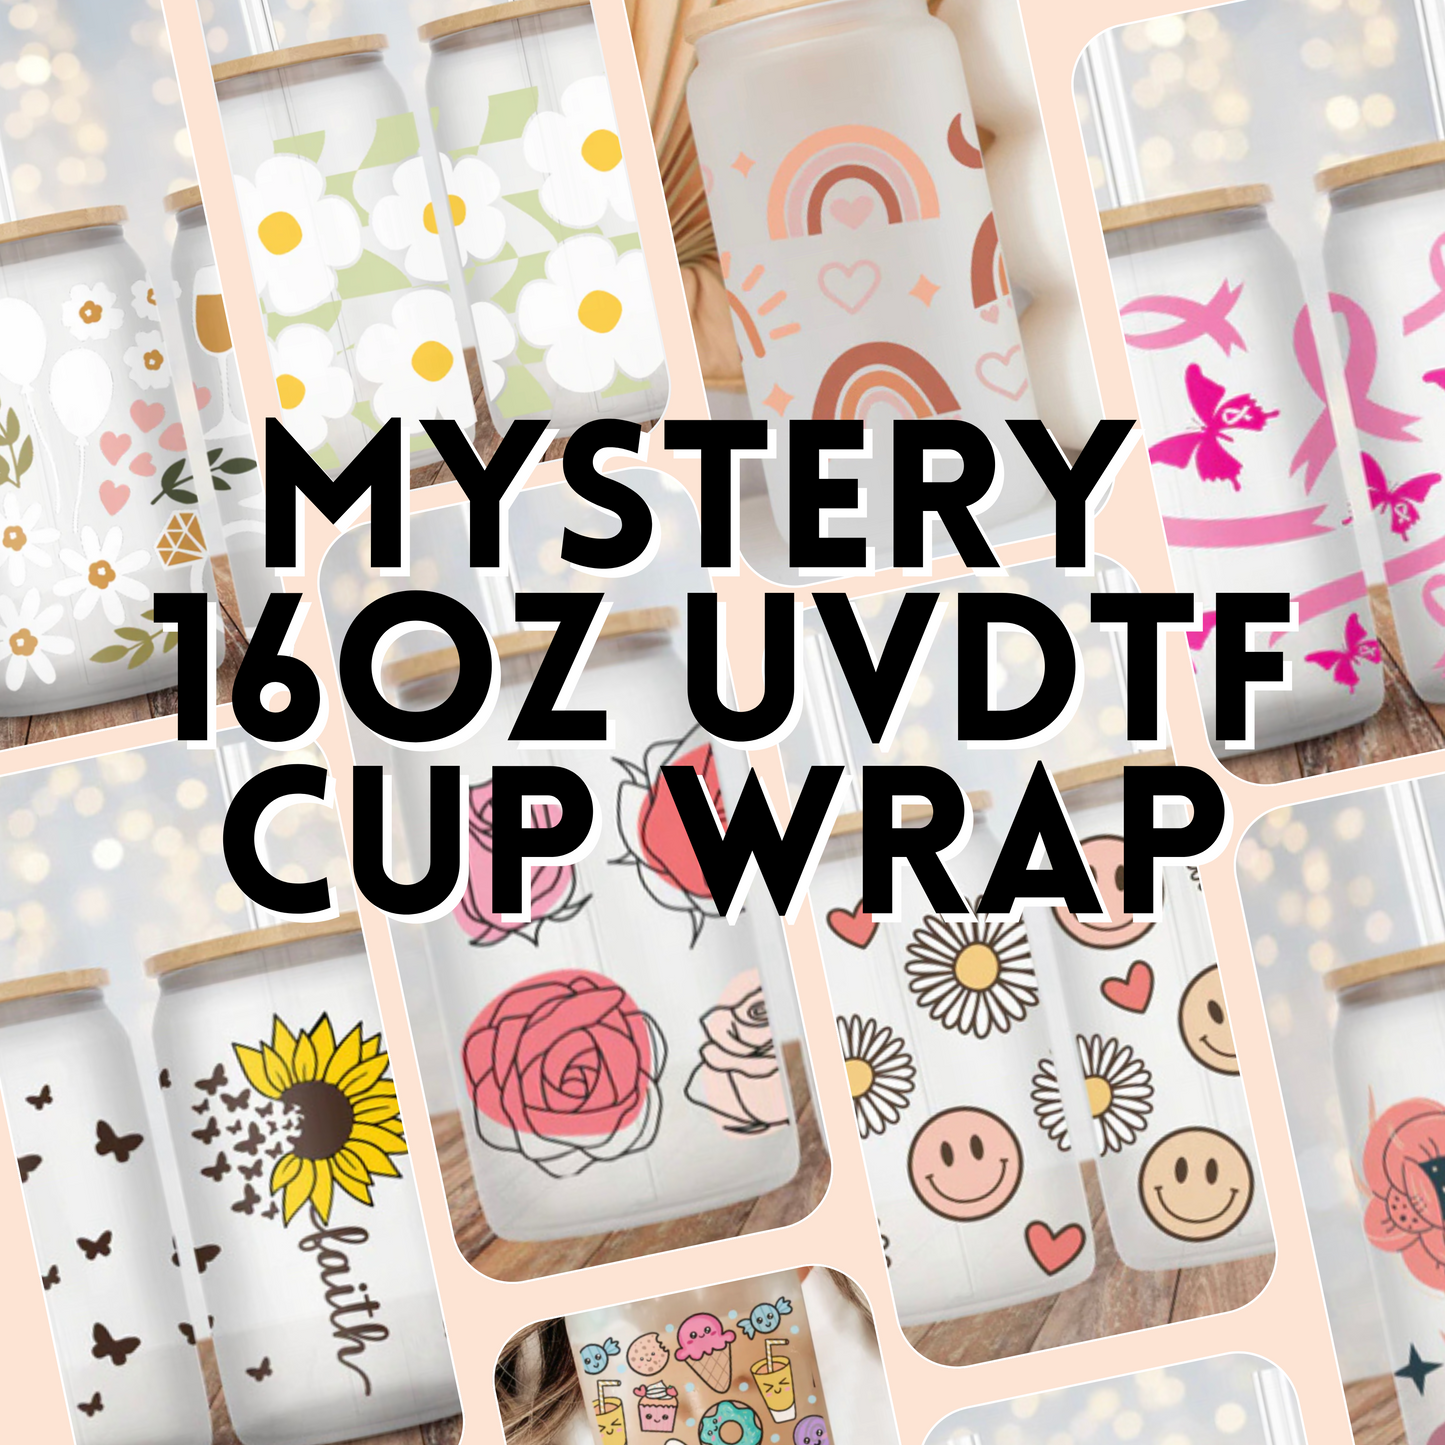 Mystery 16oz UVDTF Cup Wrap